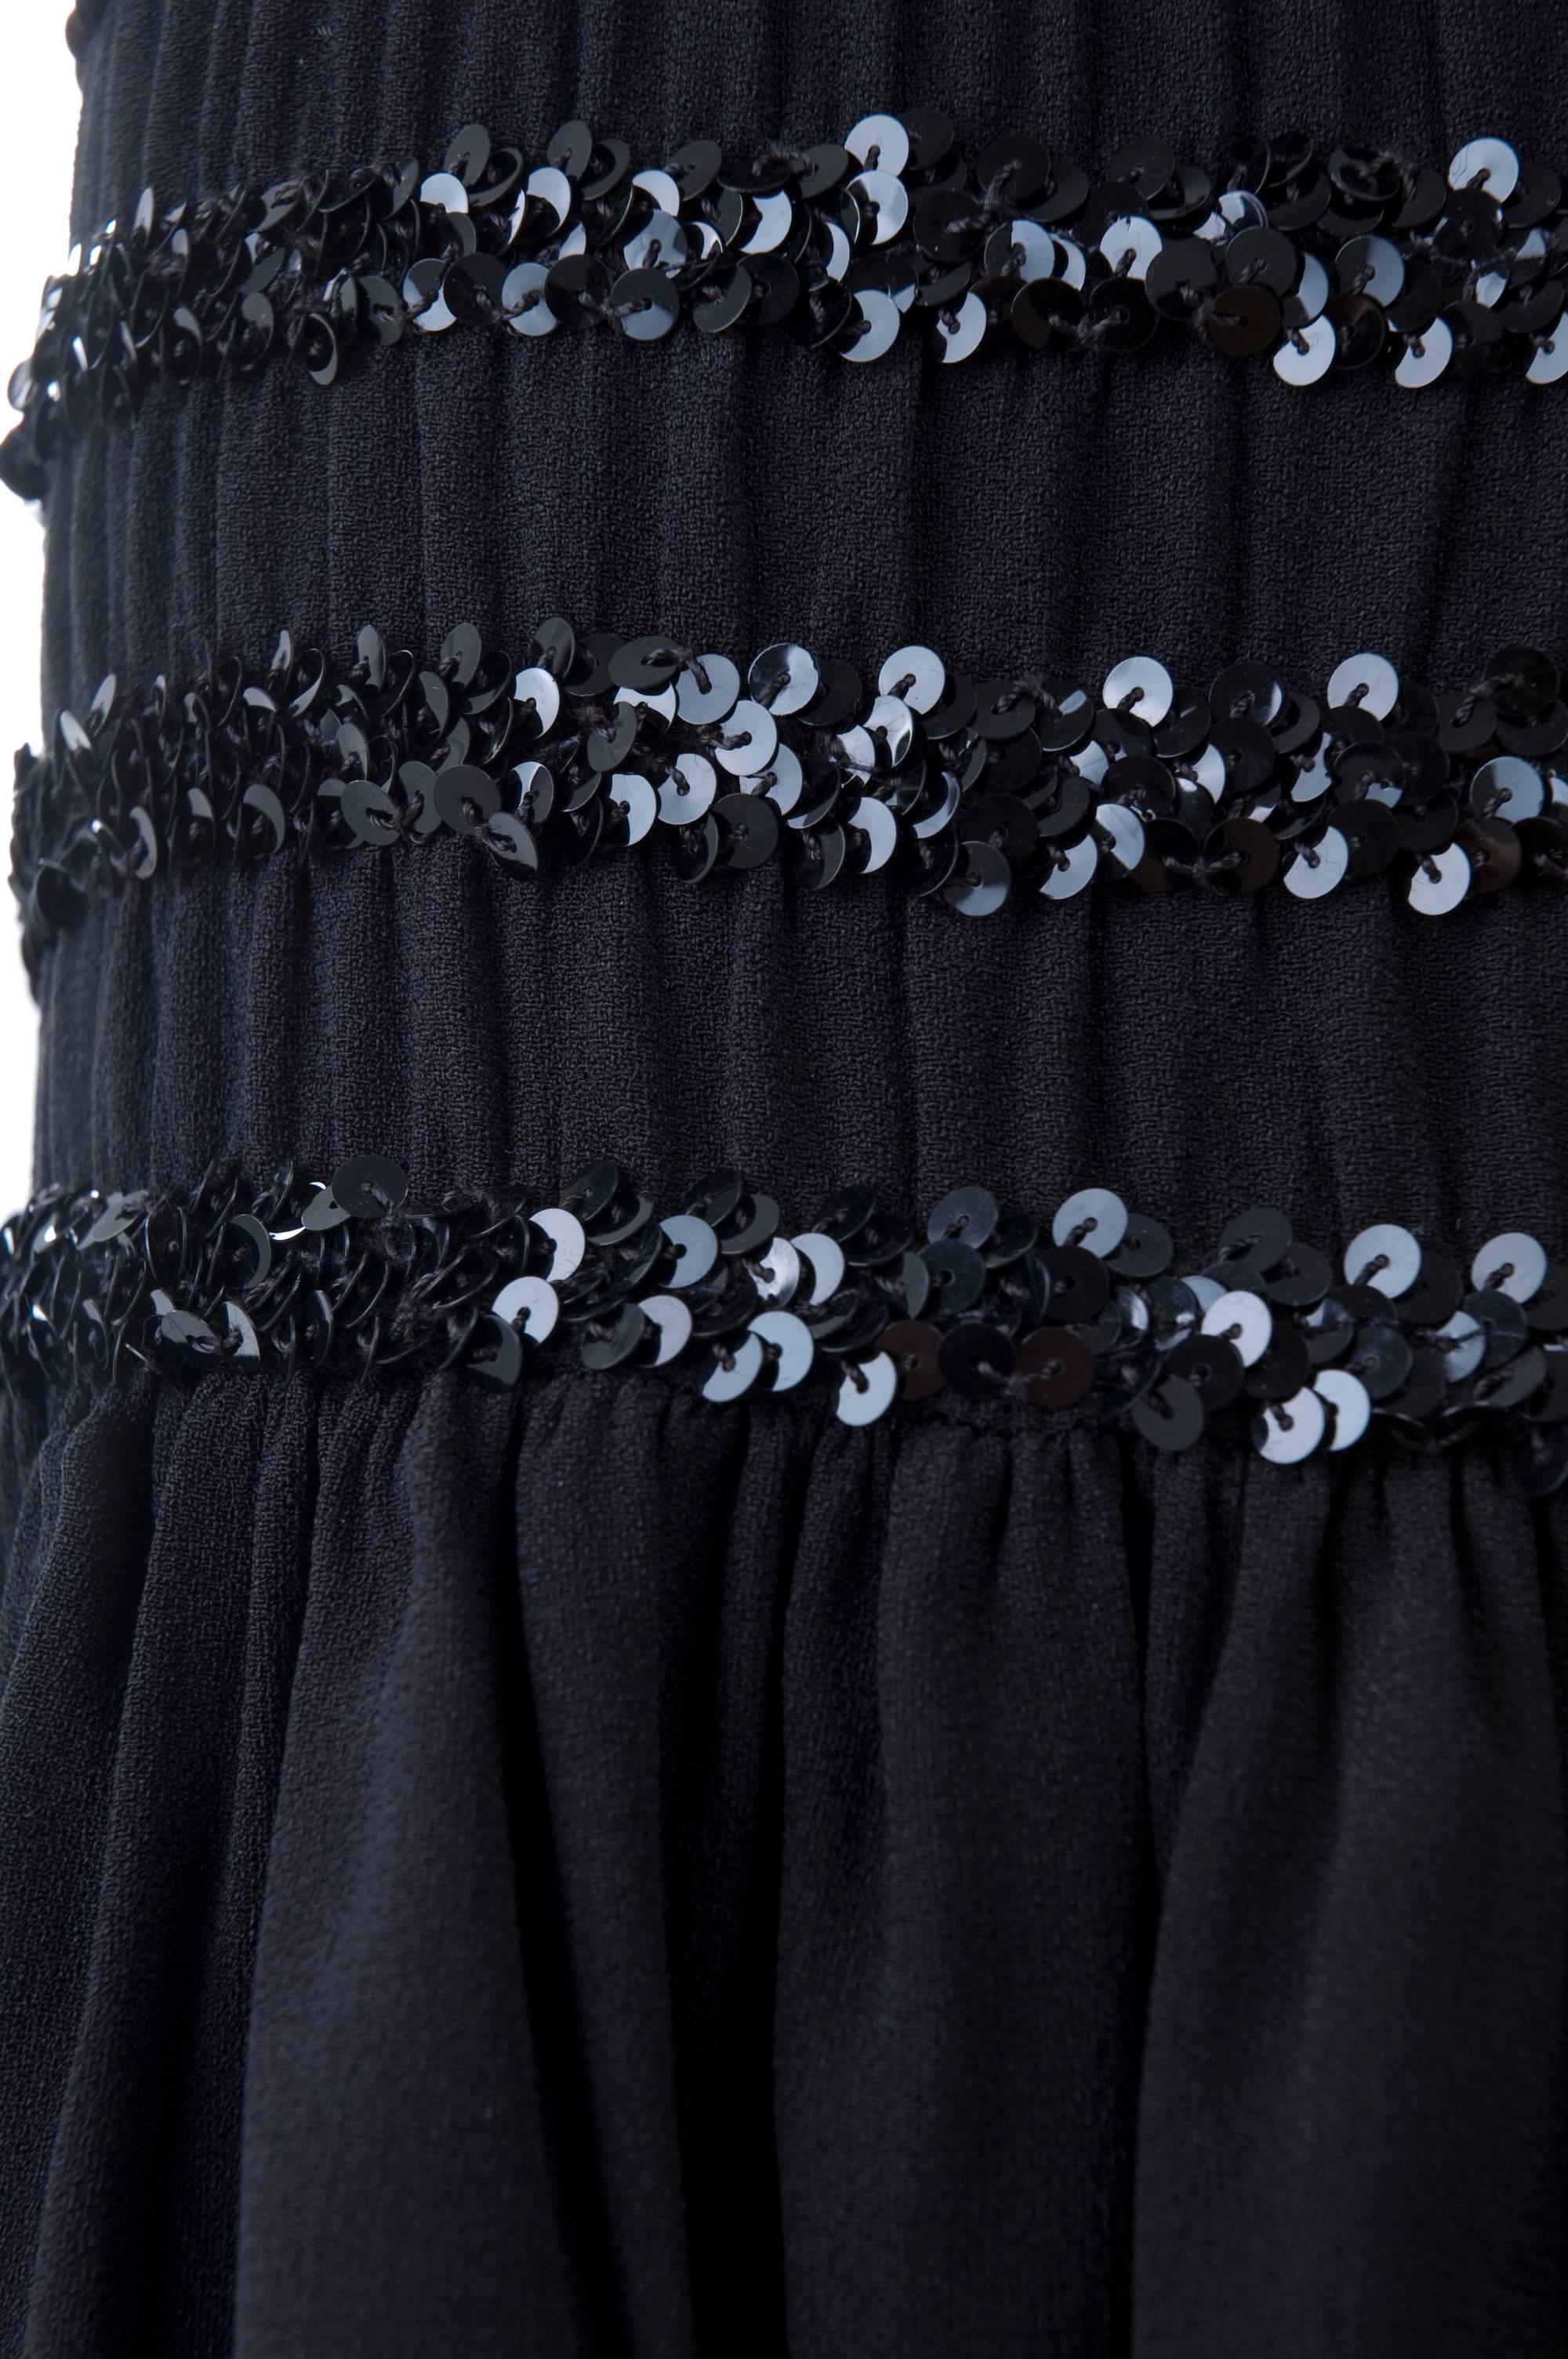 1983 Vintage Yves Saint Laurent Black Black Smocked and Sequined Cocktail Dress For Sale 4